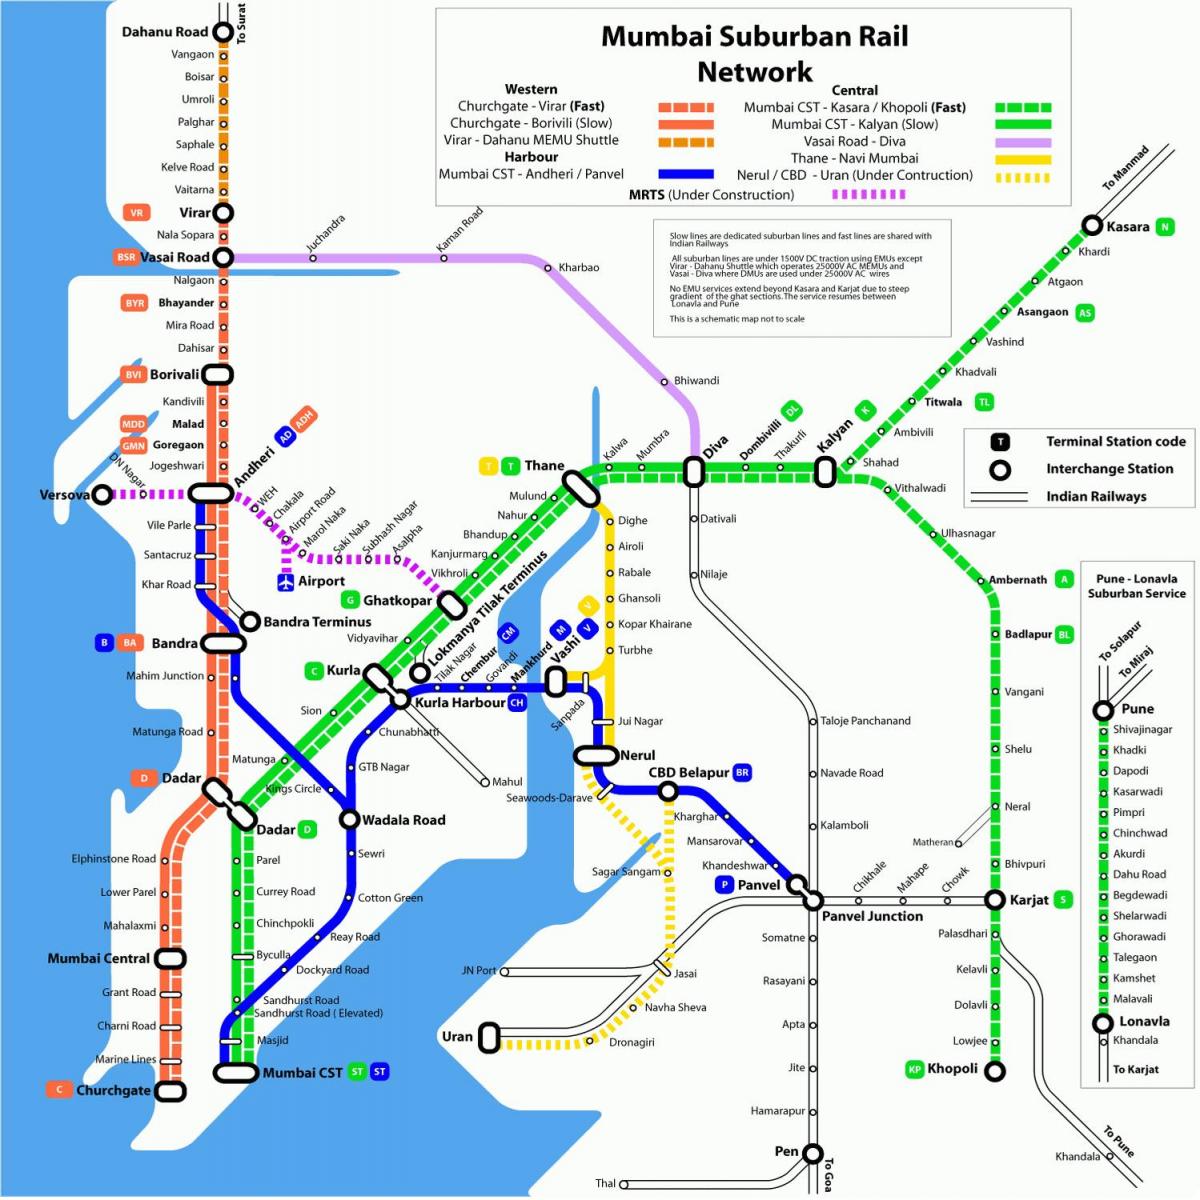 Mumbajus vietos geležinkelių žemėlapis